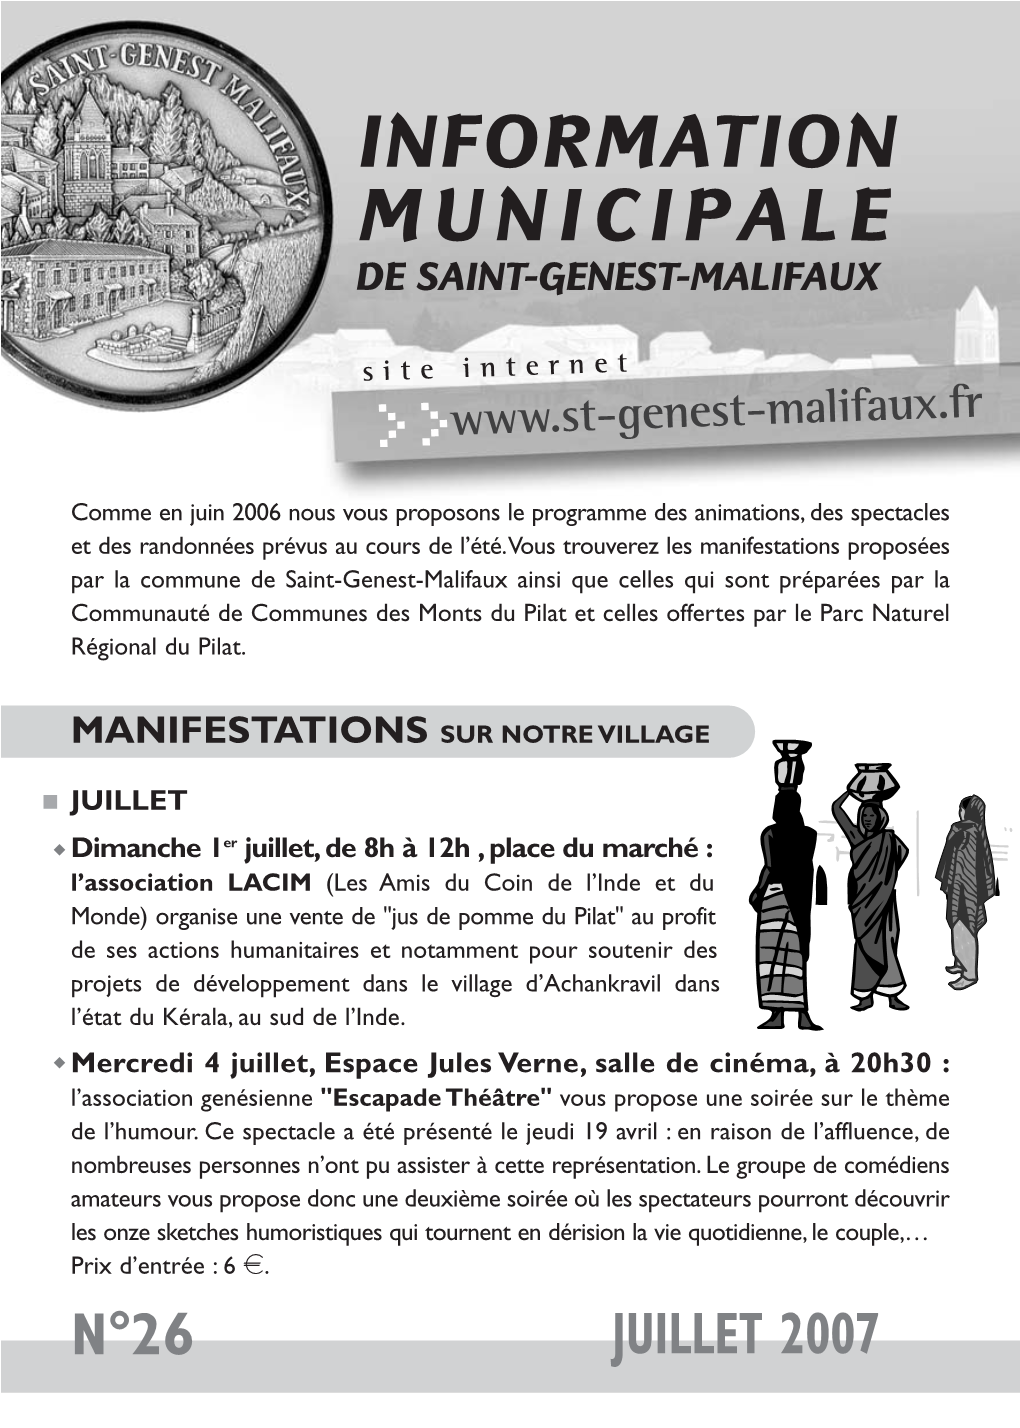 Information Municipale De Saint-Genest-Malifaux